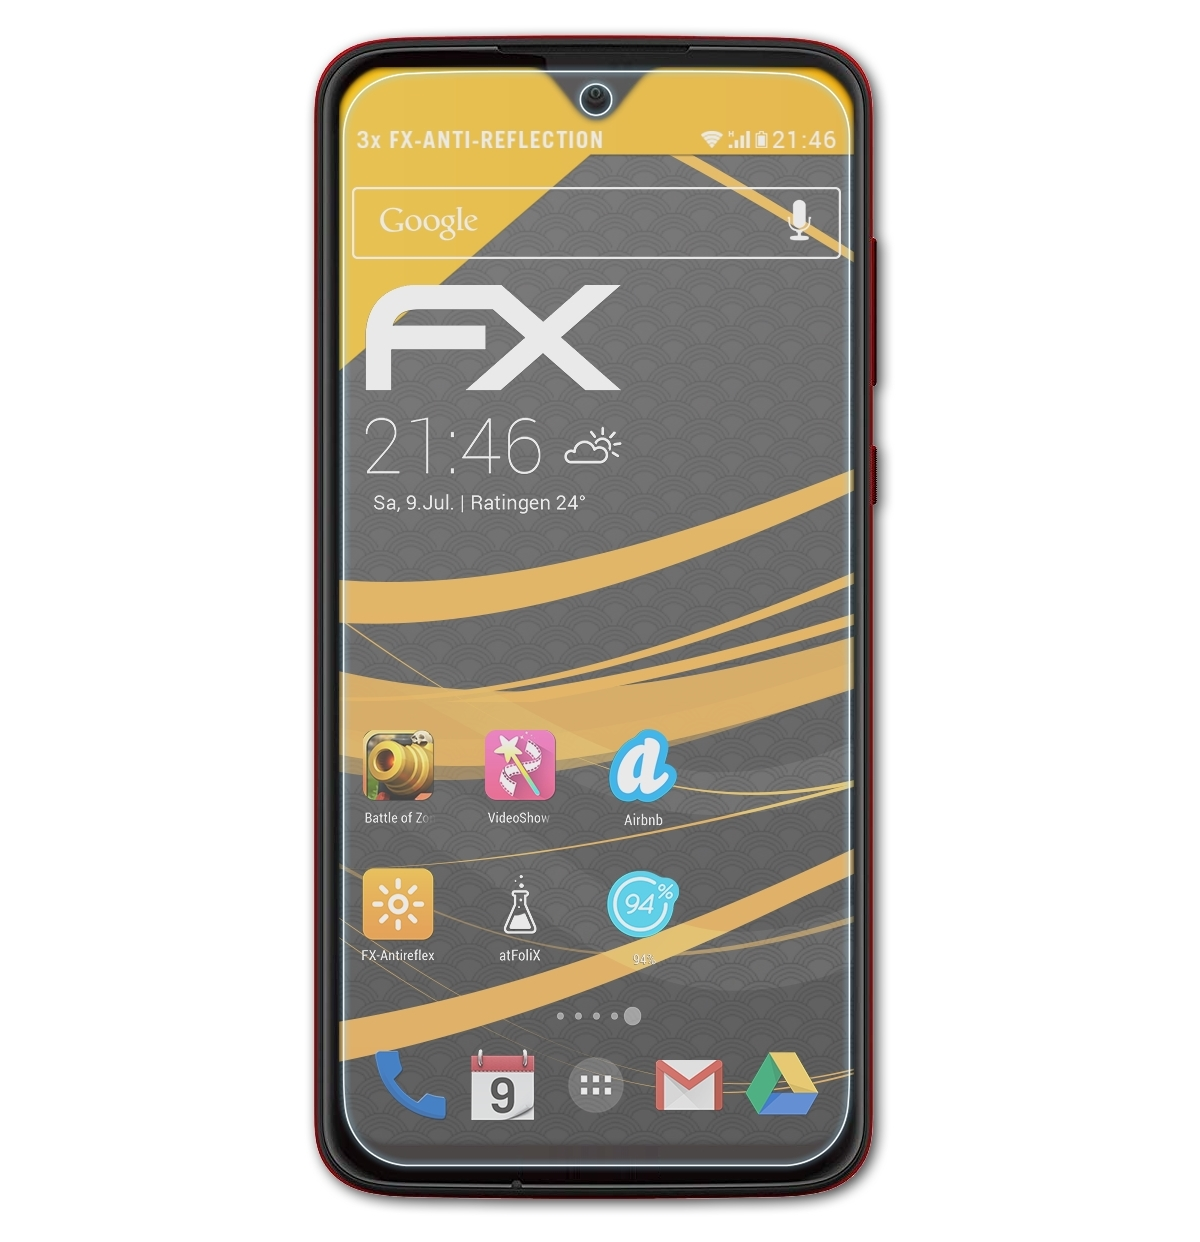 Moto 3x FX-Antireflex Lenovo Motorola G7 Plus) Displayschutz(für ATFOLIX